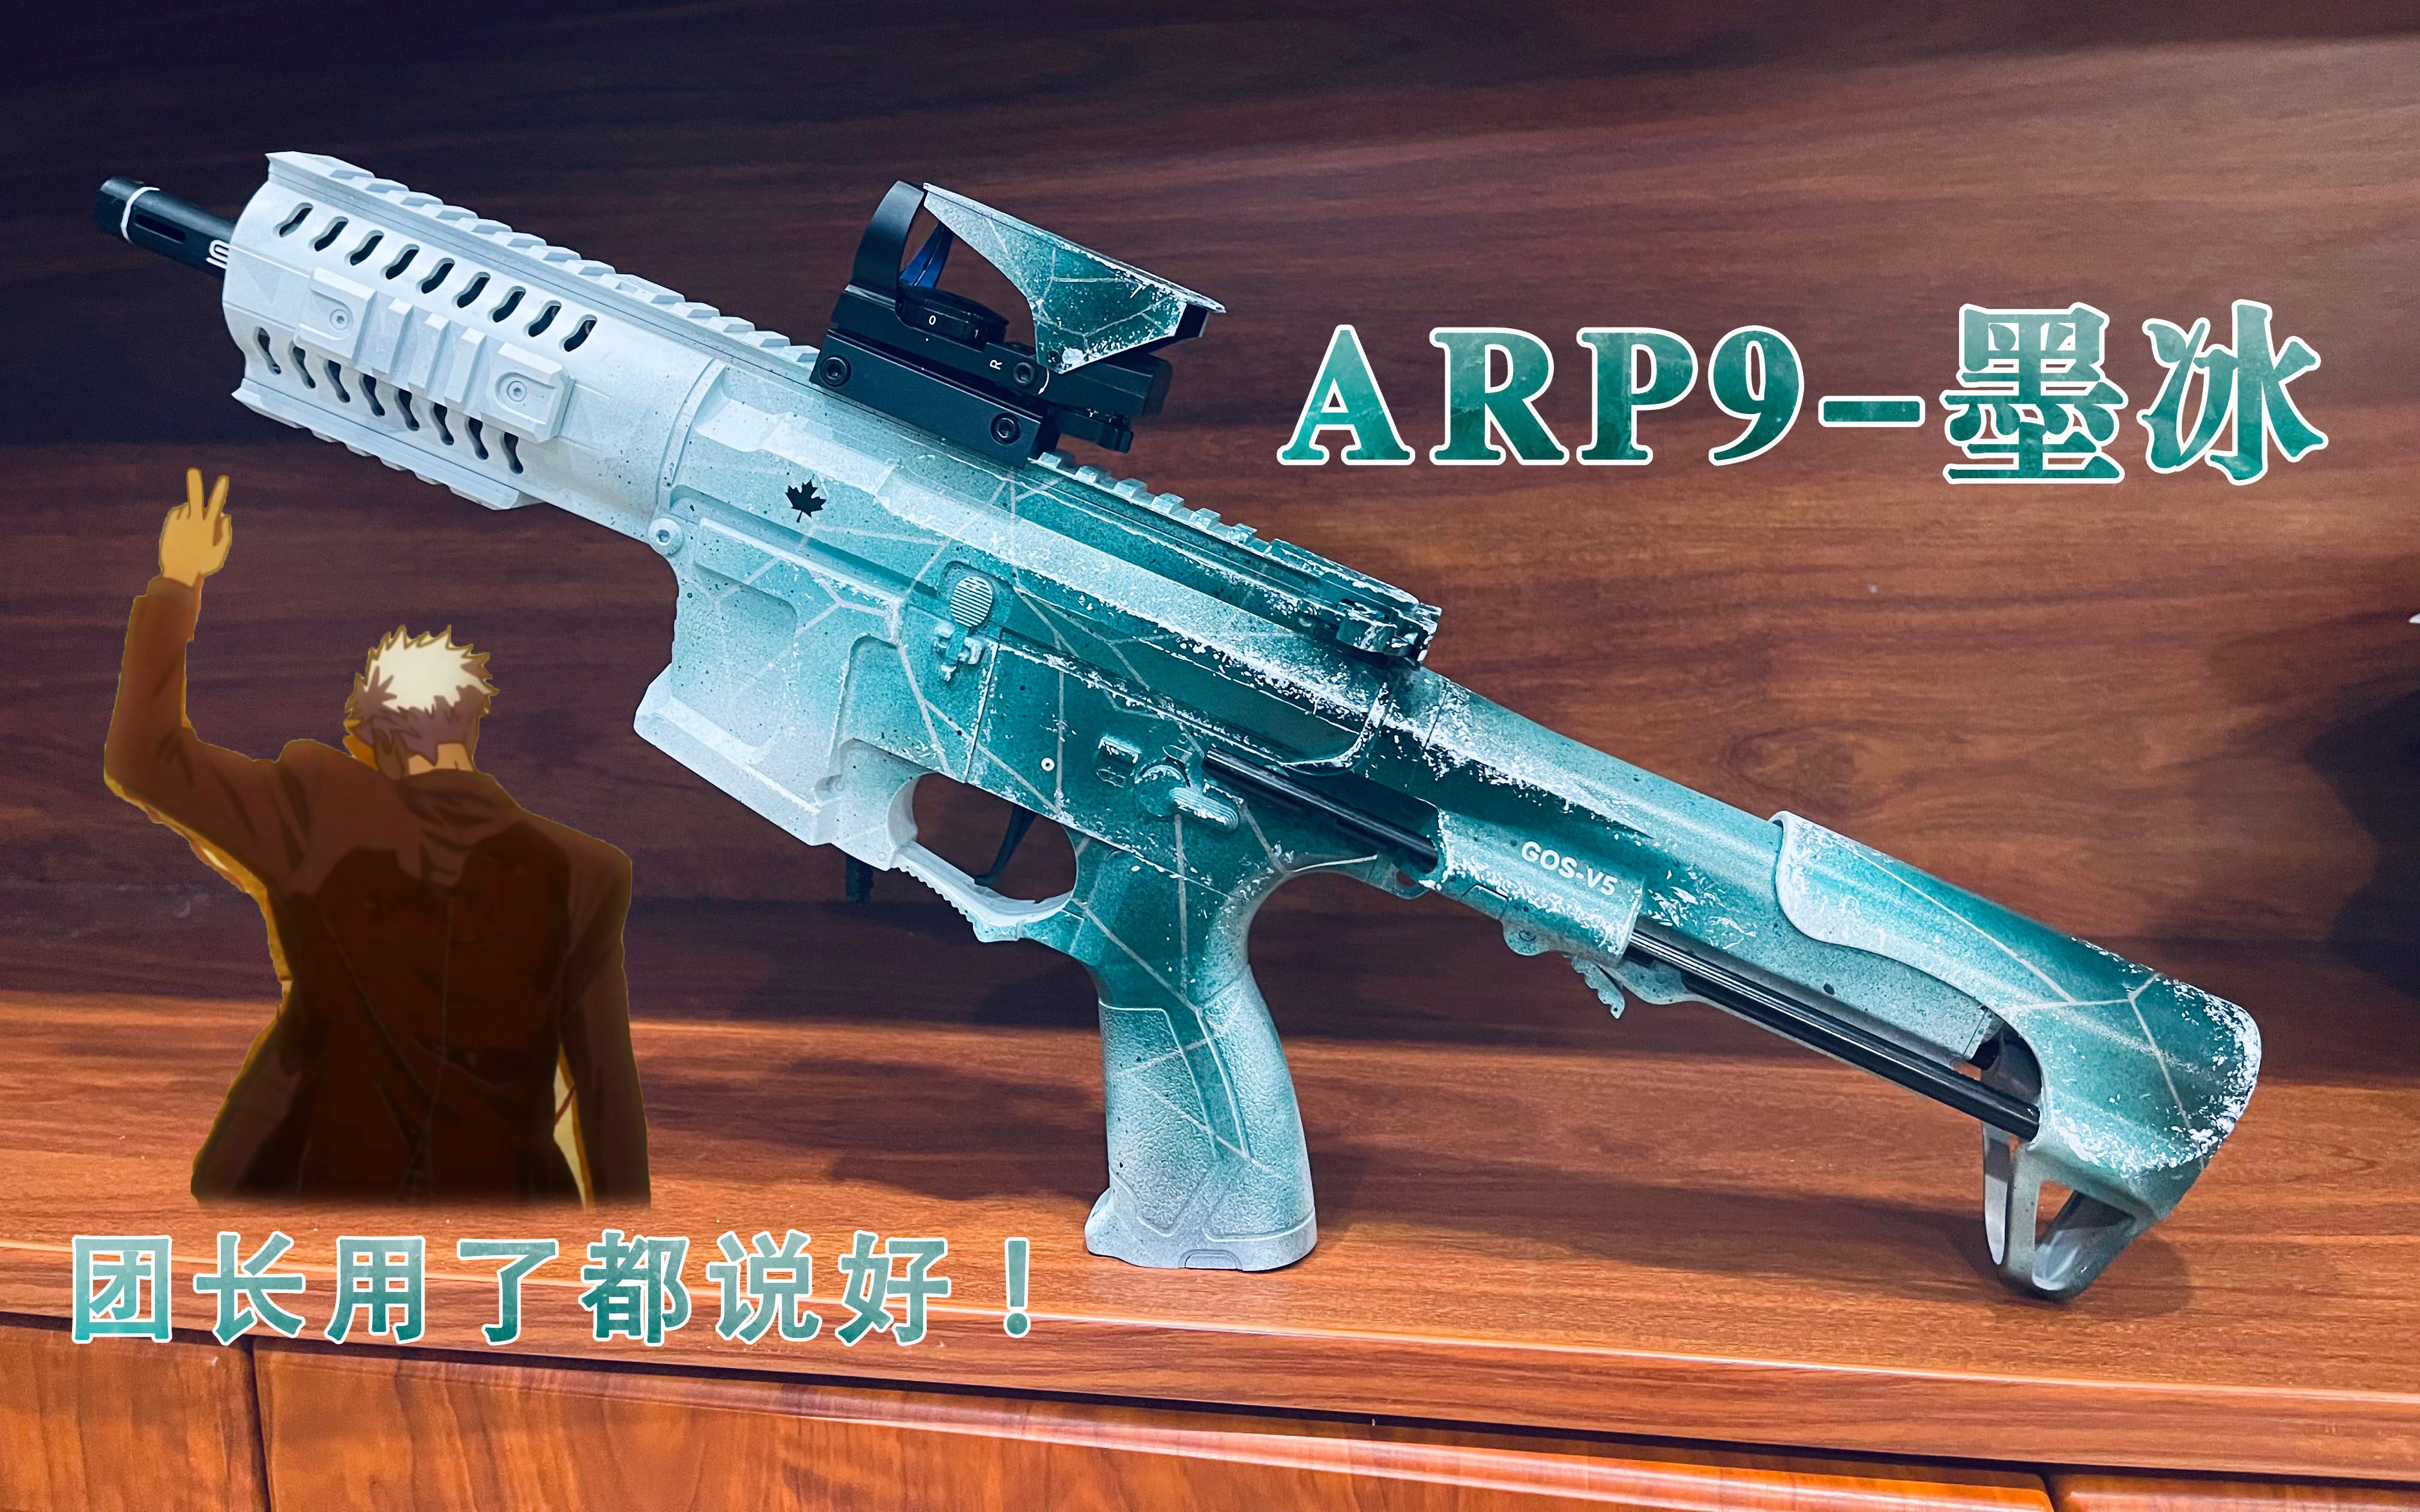 【墨冰涂装】天弓星乐arp9墨冰涂装喷涂演示，奥尔加团长用了都说好。--不可发射模型玩具ARP9